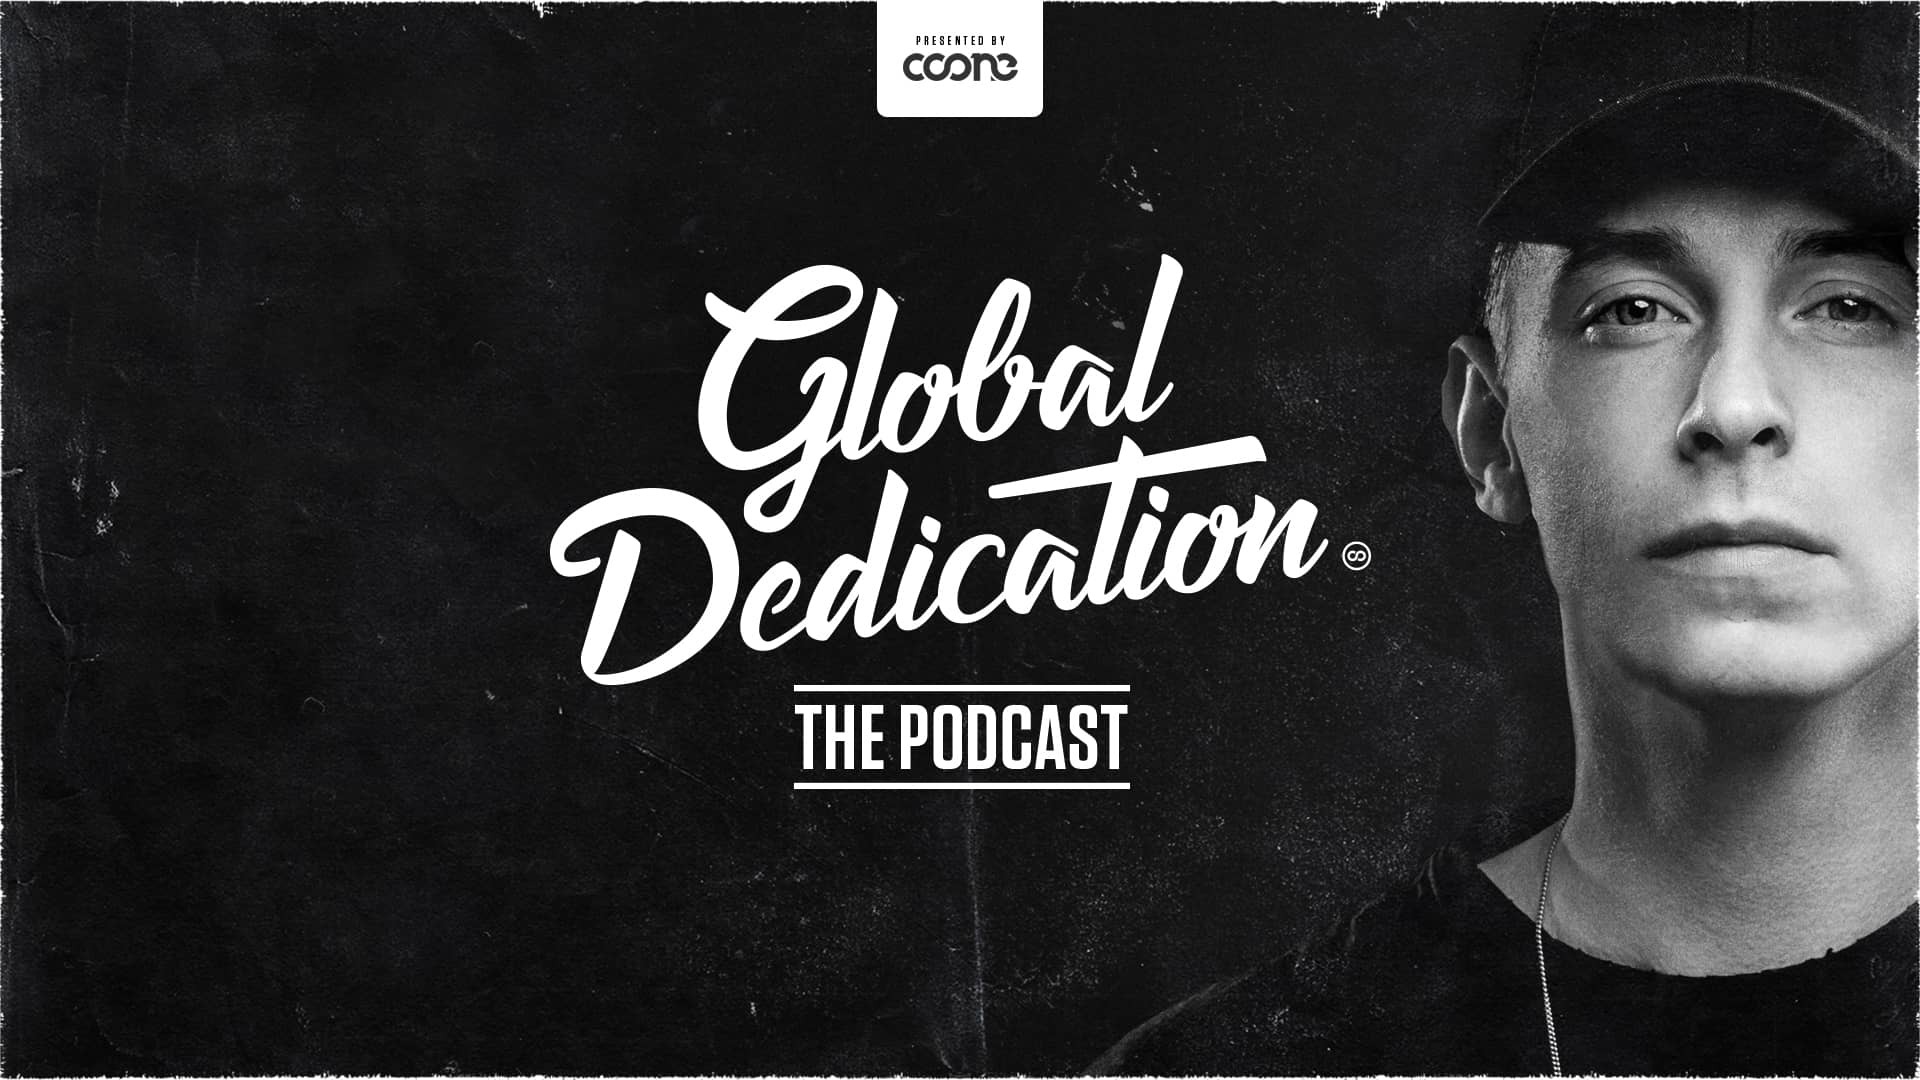 Coone - Global Dedication